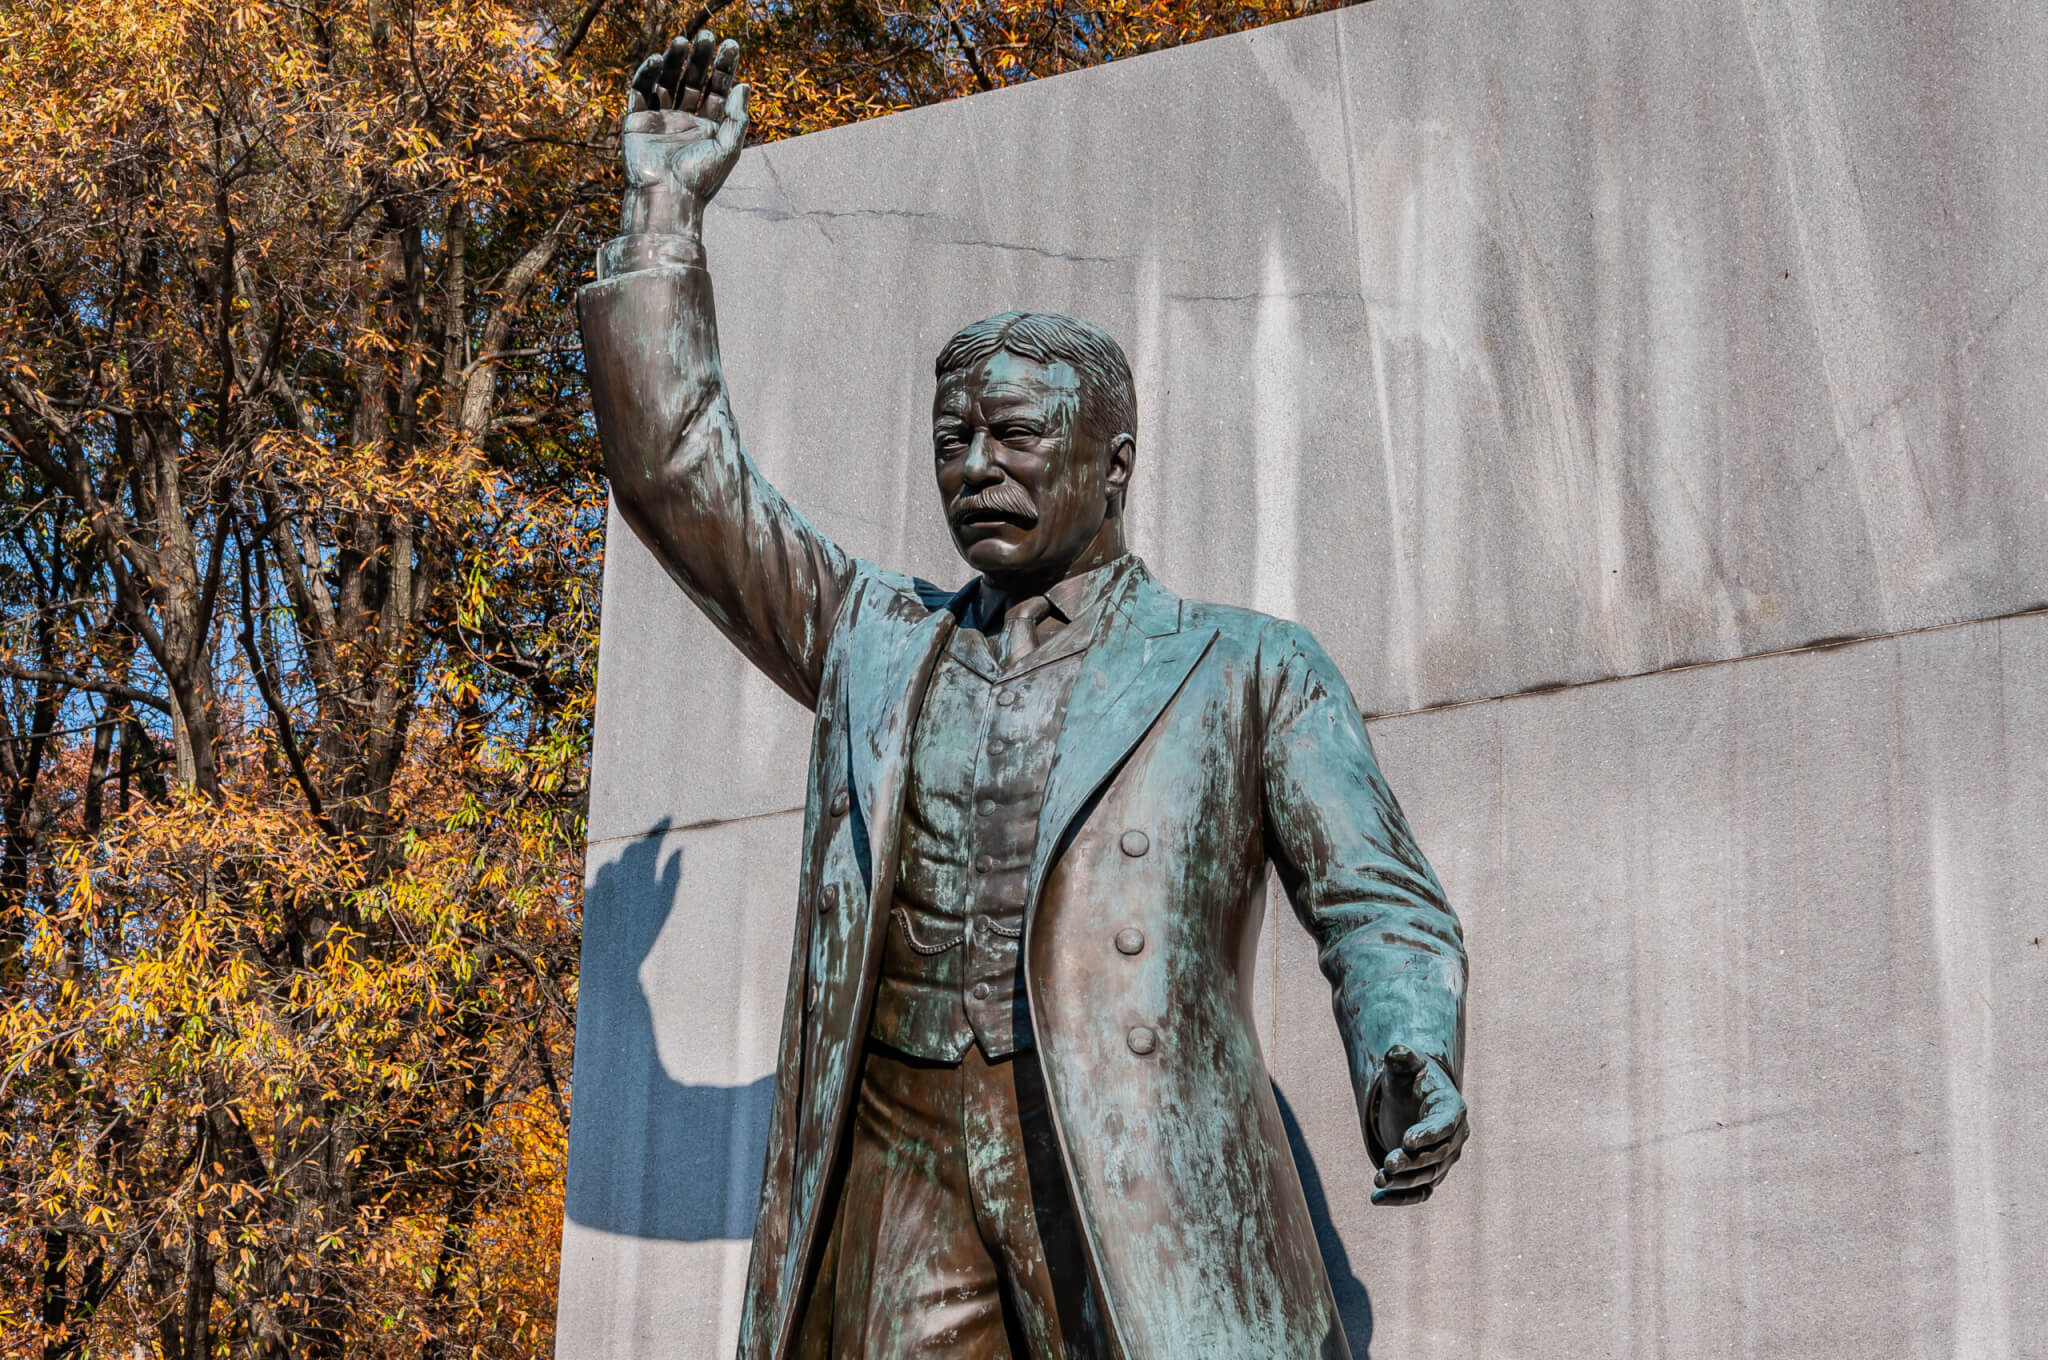 Theodore Roosevelt Monument, Roosevelt Island, Washington DC USA